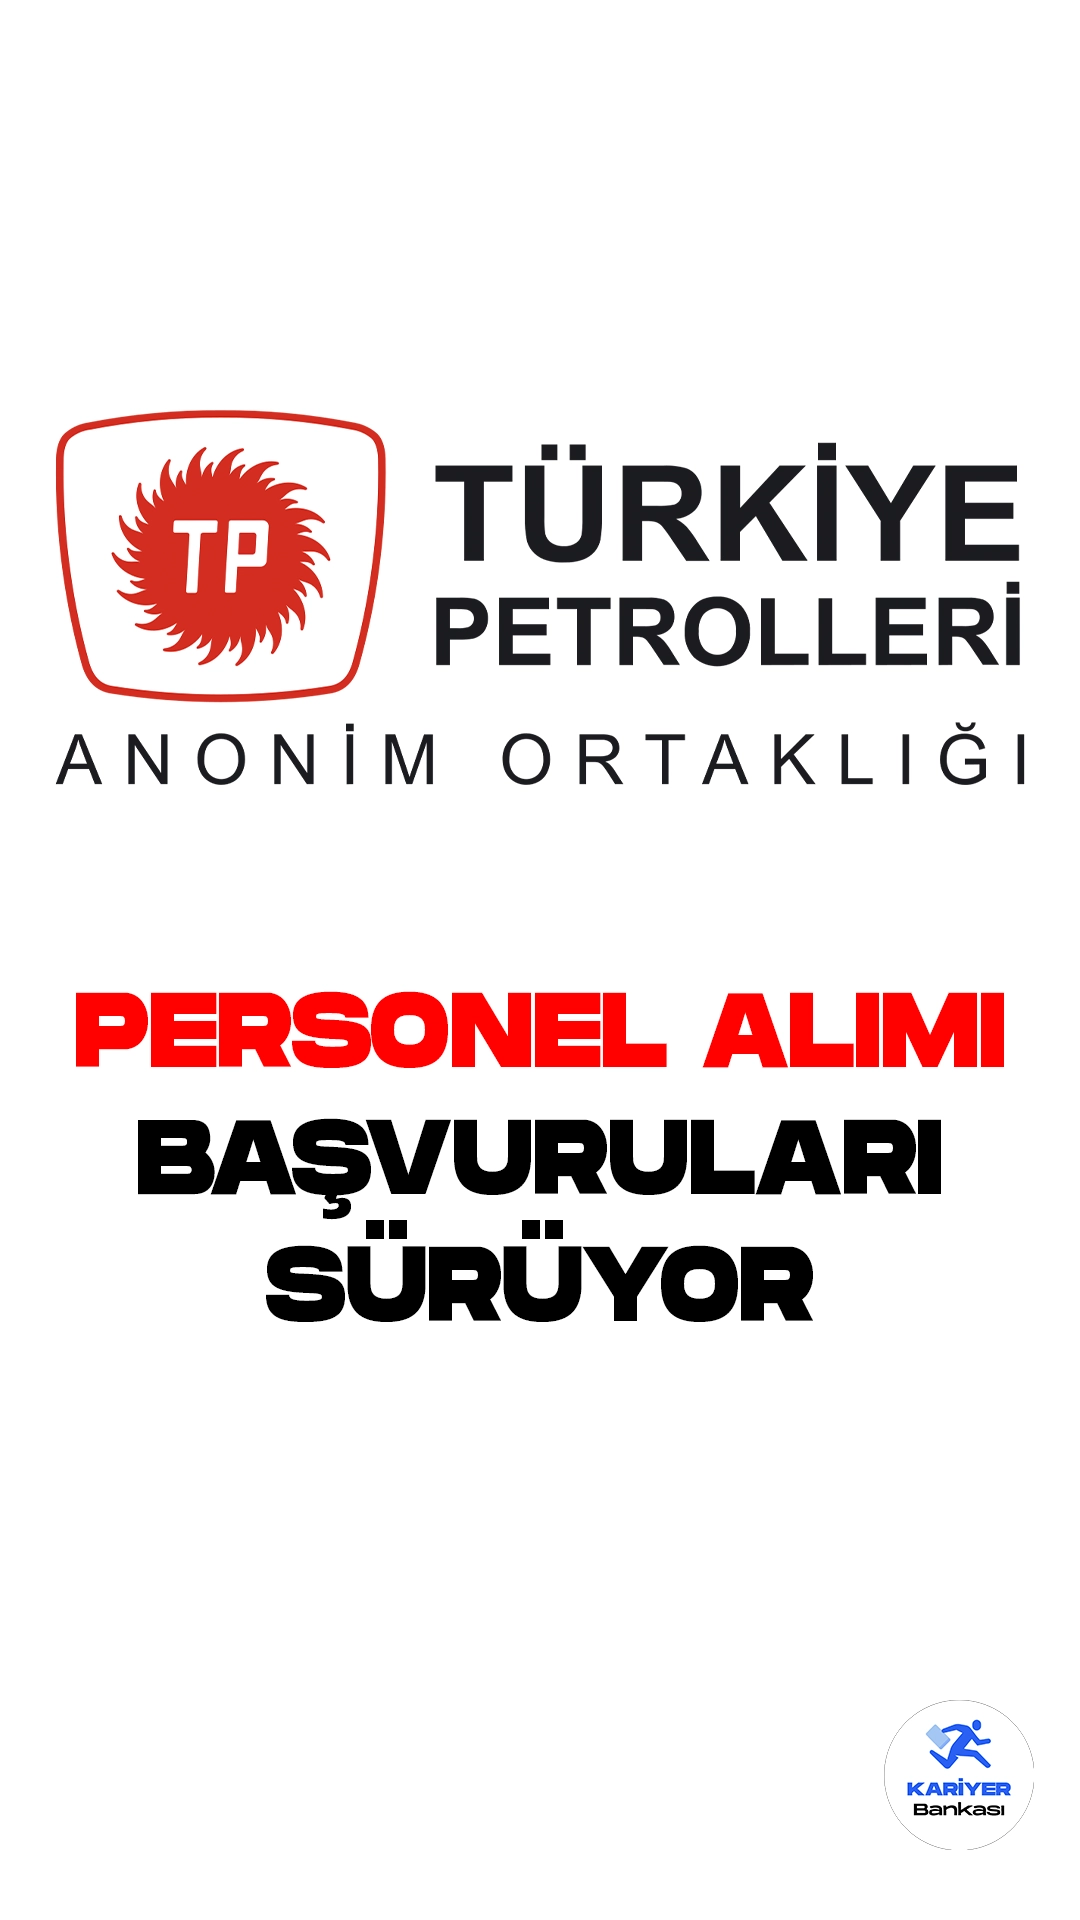 Türkiye Petrolleri Anonim Ortaklığı (TPAO) personel alımı başvuruları devam ediyor. Cumhurbaşkanlığı SBB'de yayımlanan duyuruya göre, TPAO'ya Merkez ve Taşra Teşkilatlarına 121 personel alımı yapılacak. Başvurular 7 Ağustos'ta sona erecek. Başvuru yapacak adayların başvuru şartlarını dikkatle incelemesi gerekmektedir.